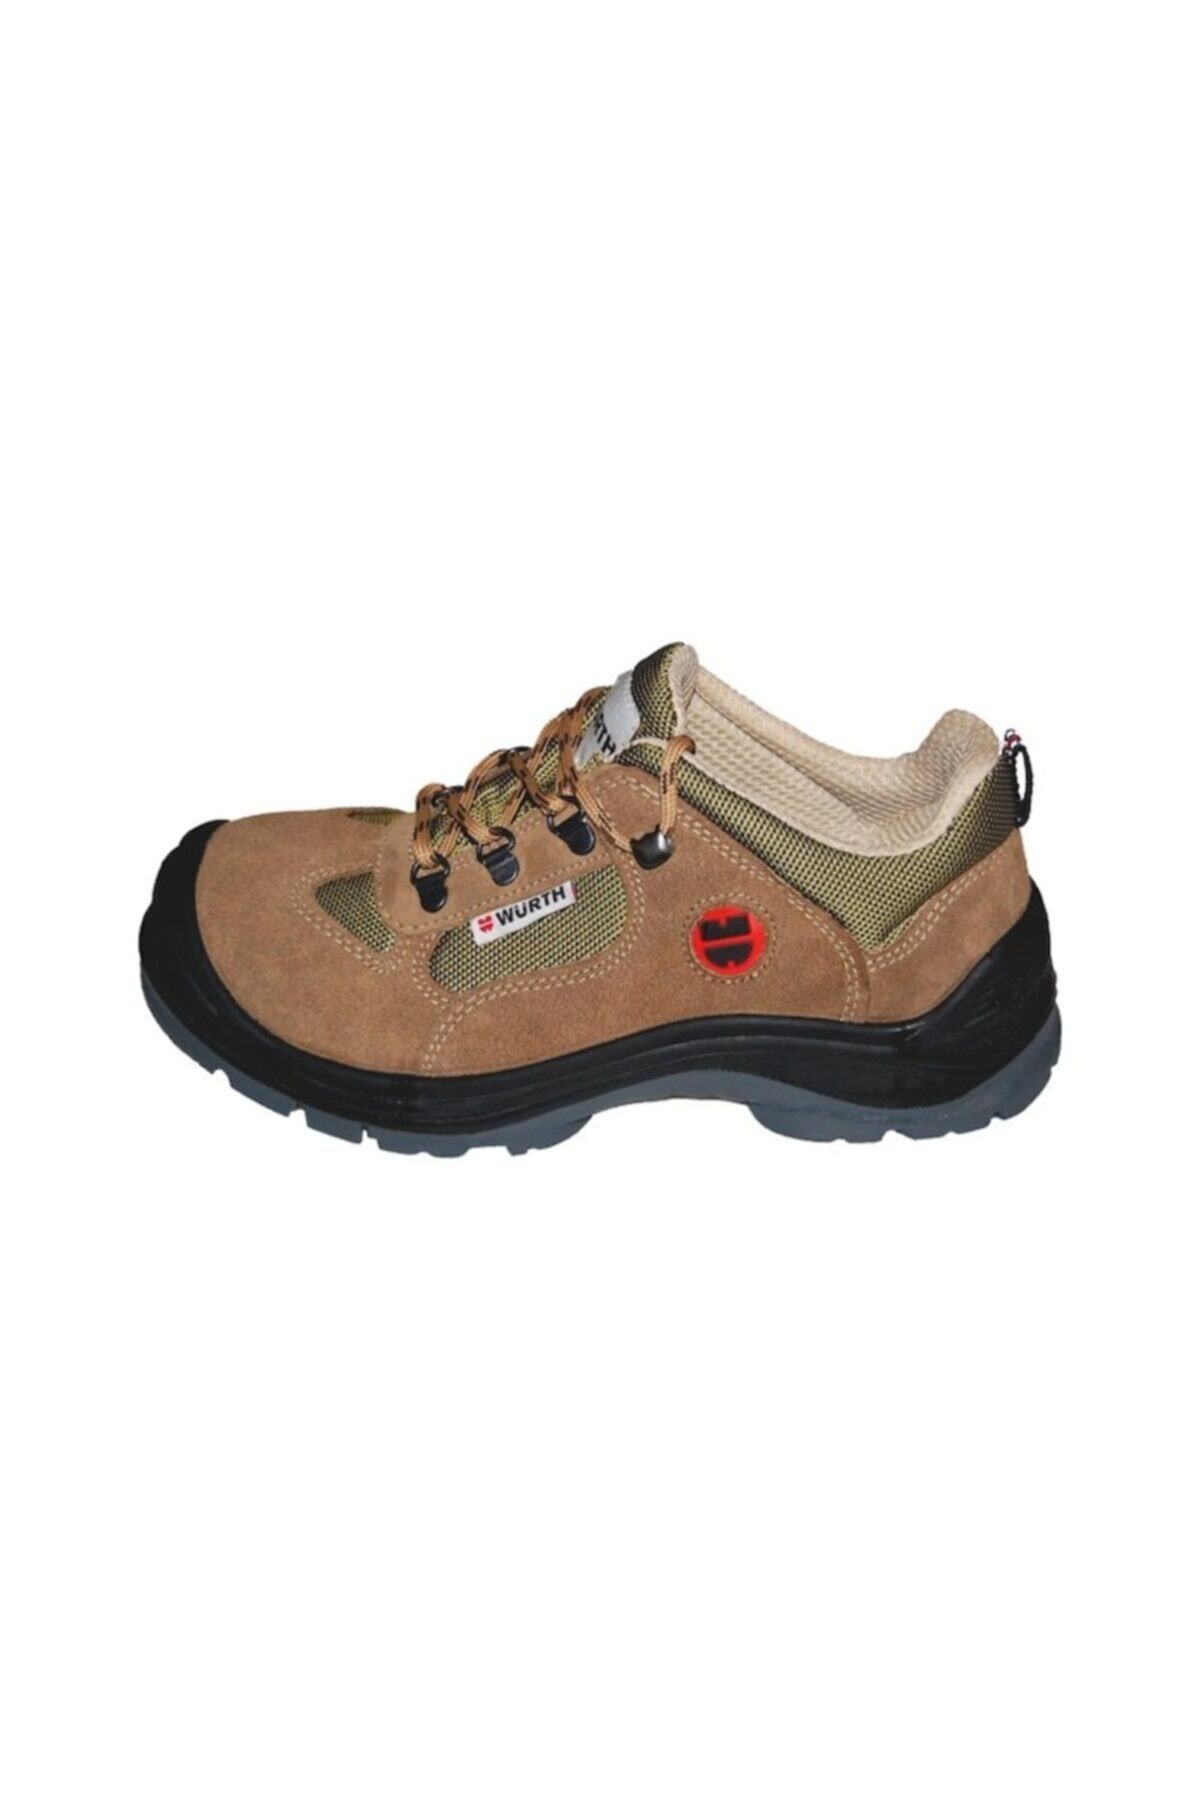 Würth S1 Boğazsız Iş Güvenliği Ayakkabısı Süet Bej Model :034